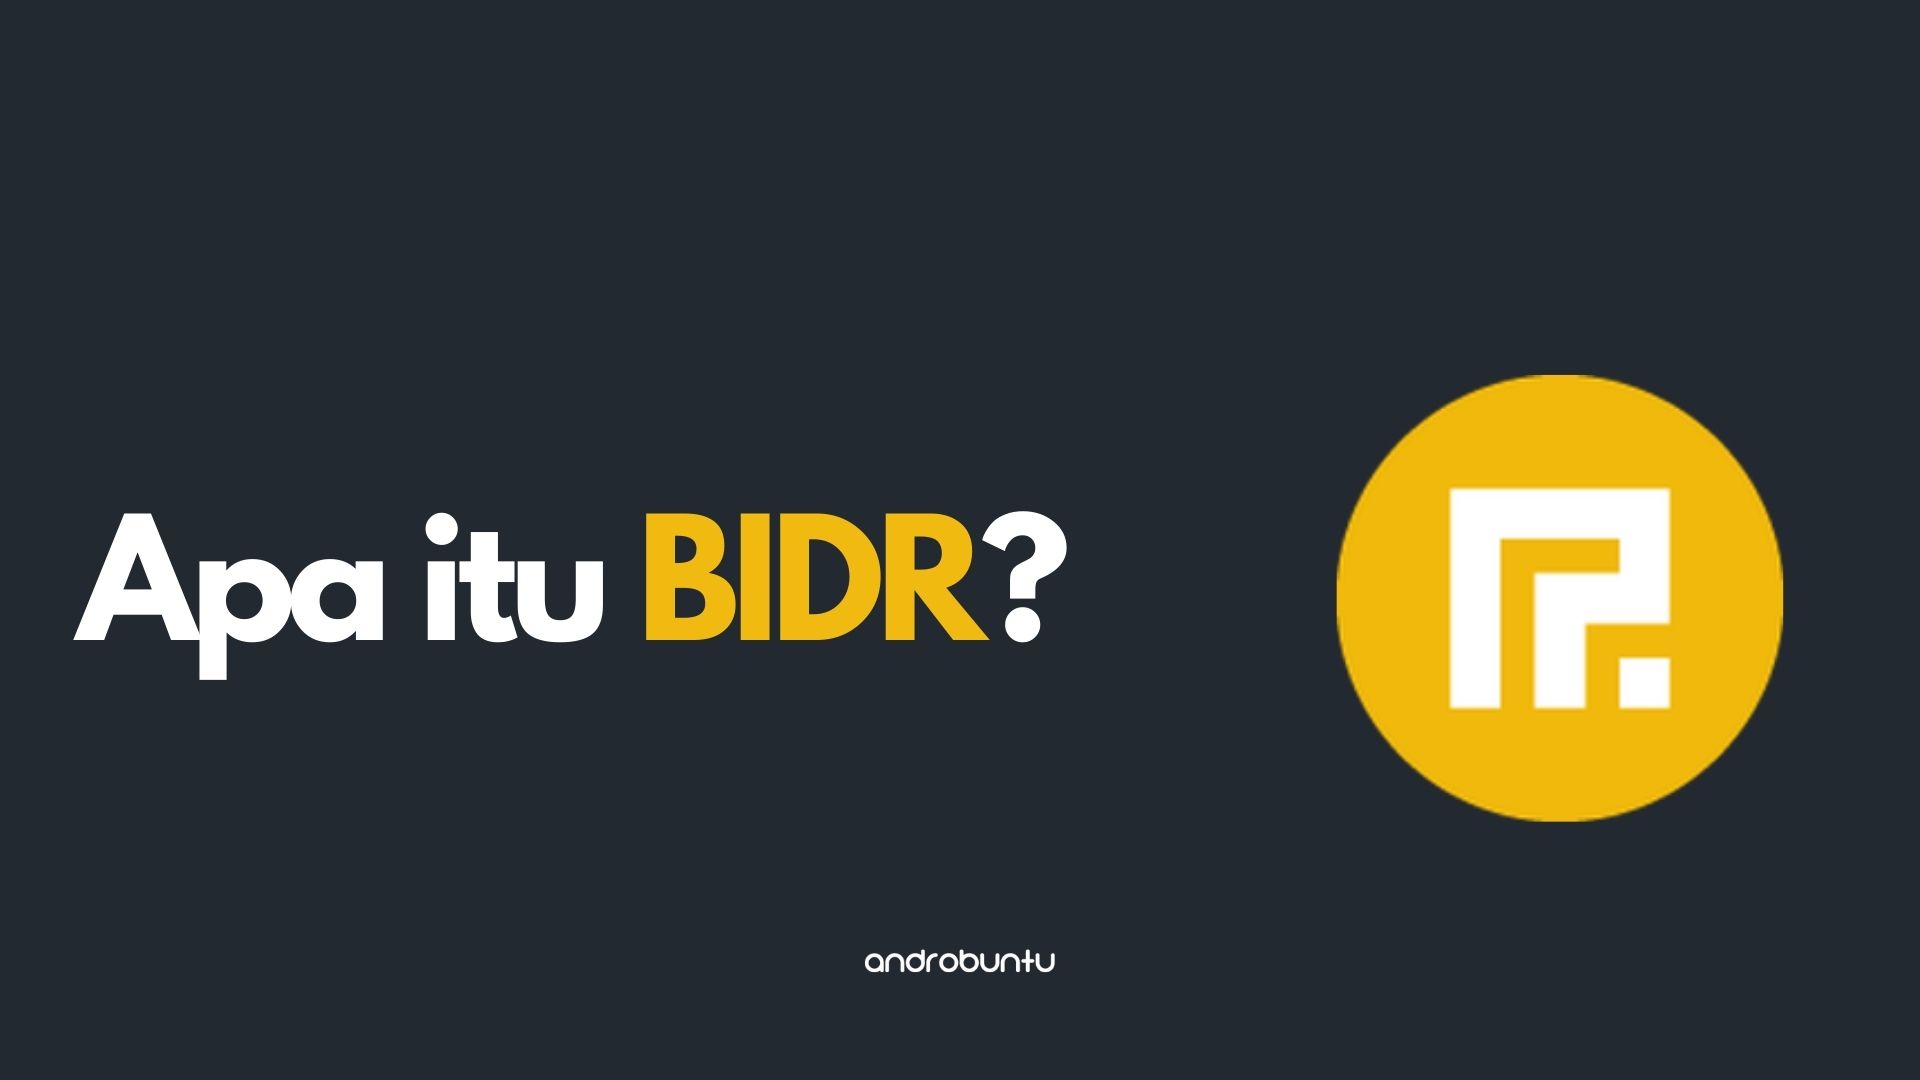 Pengertian BIDR by Androbuntu